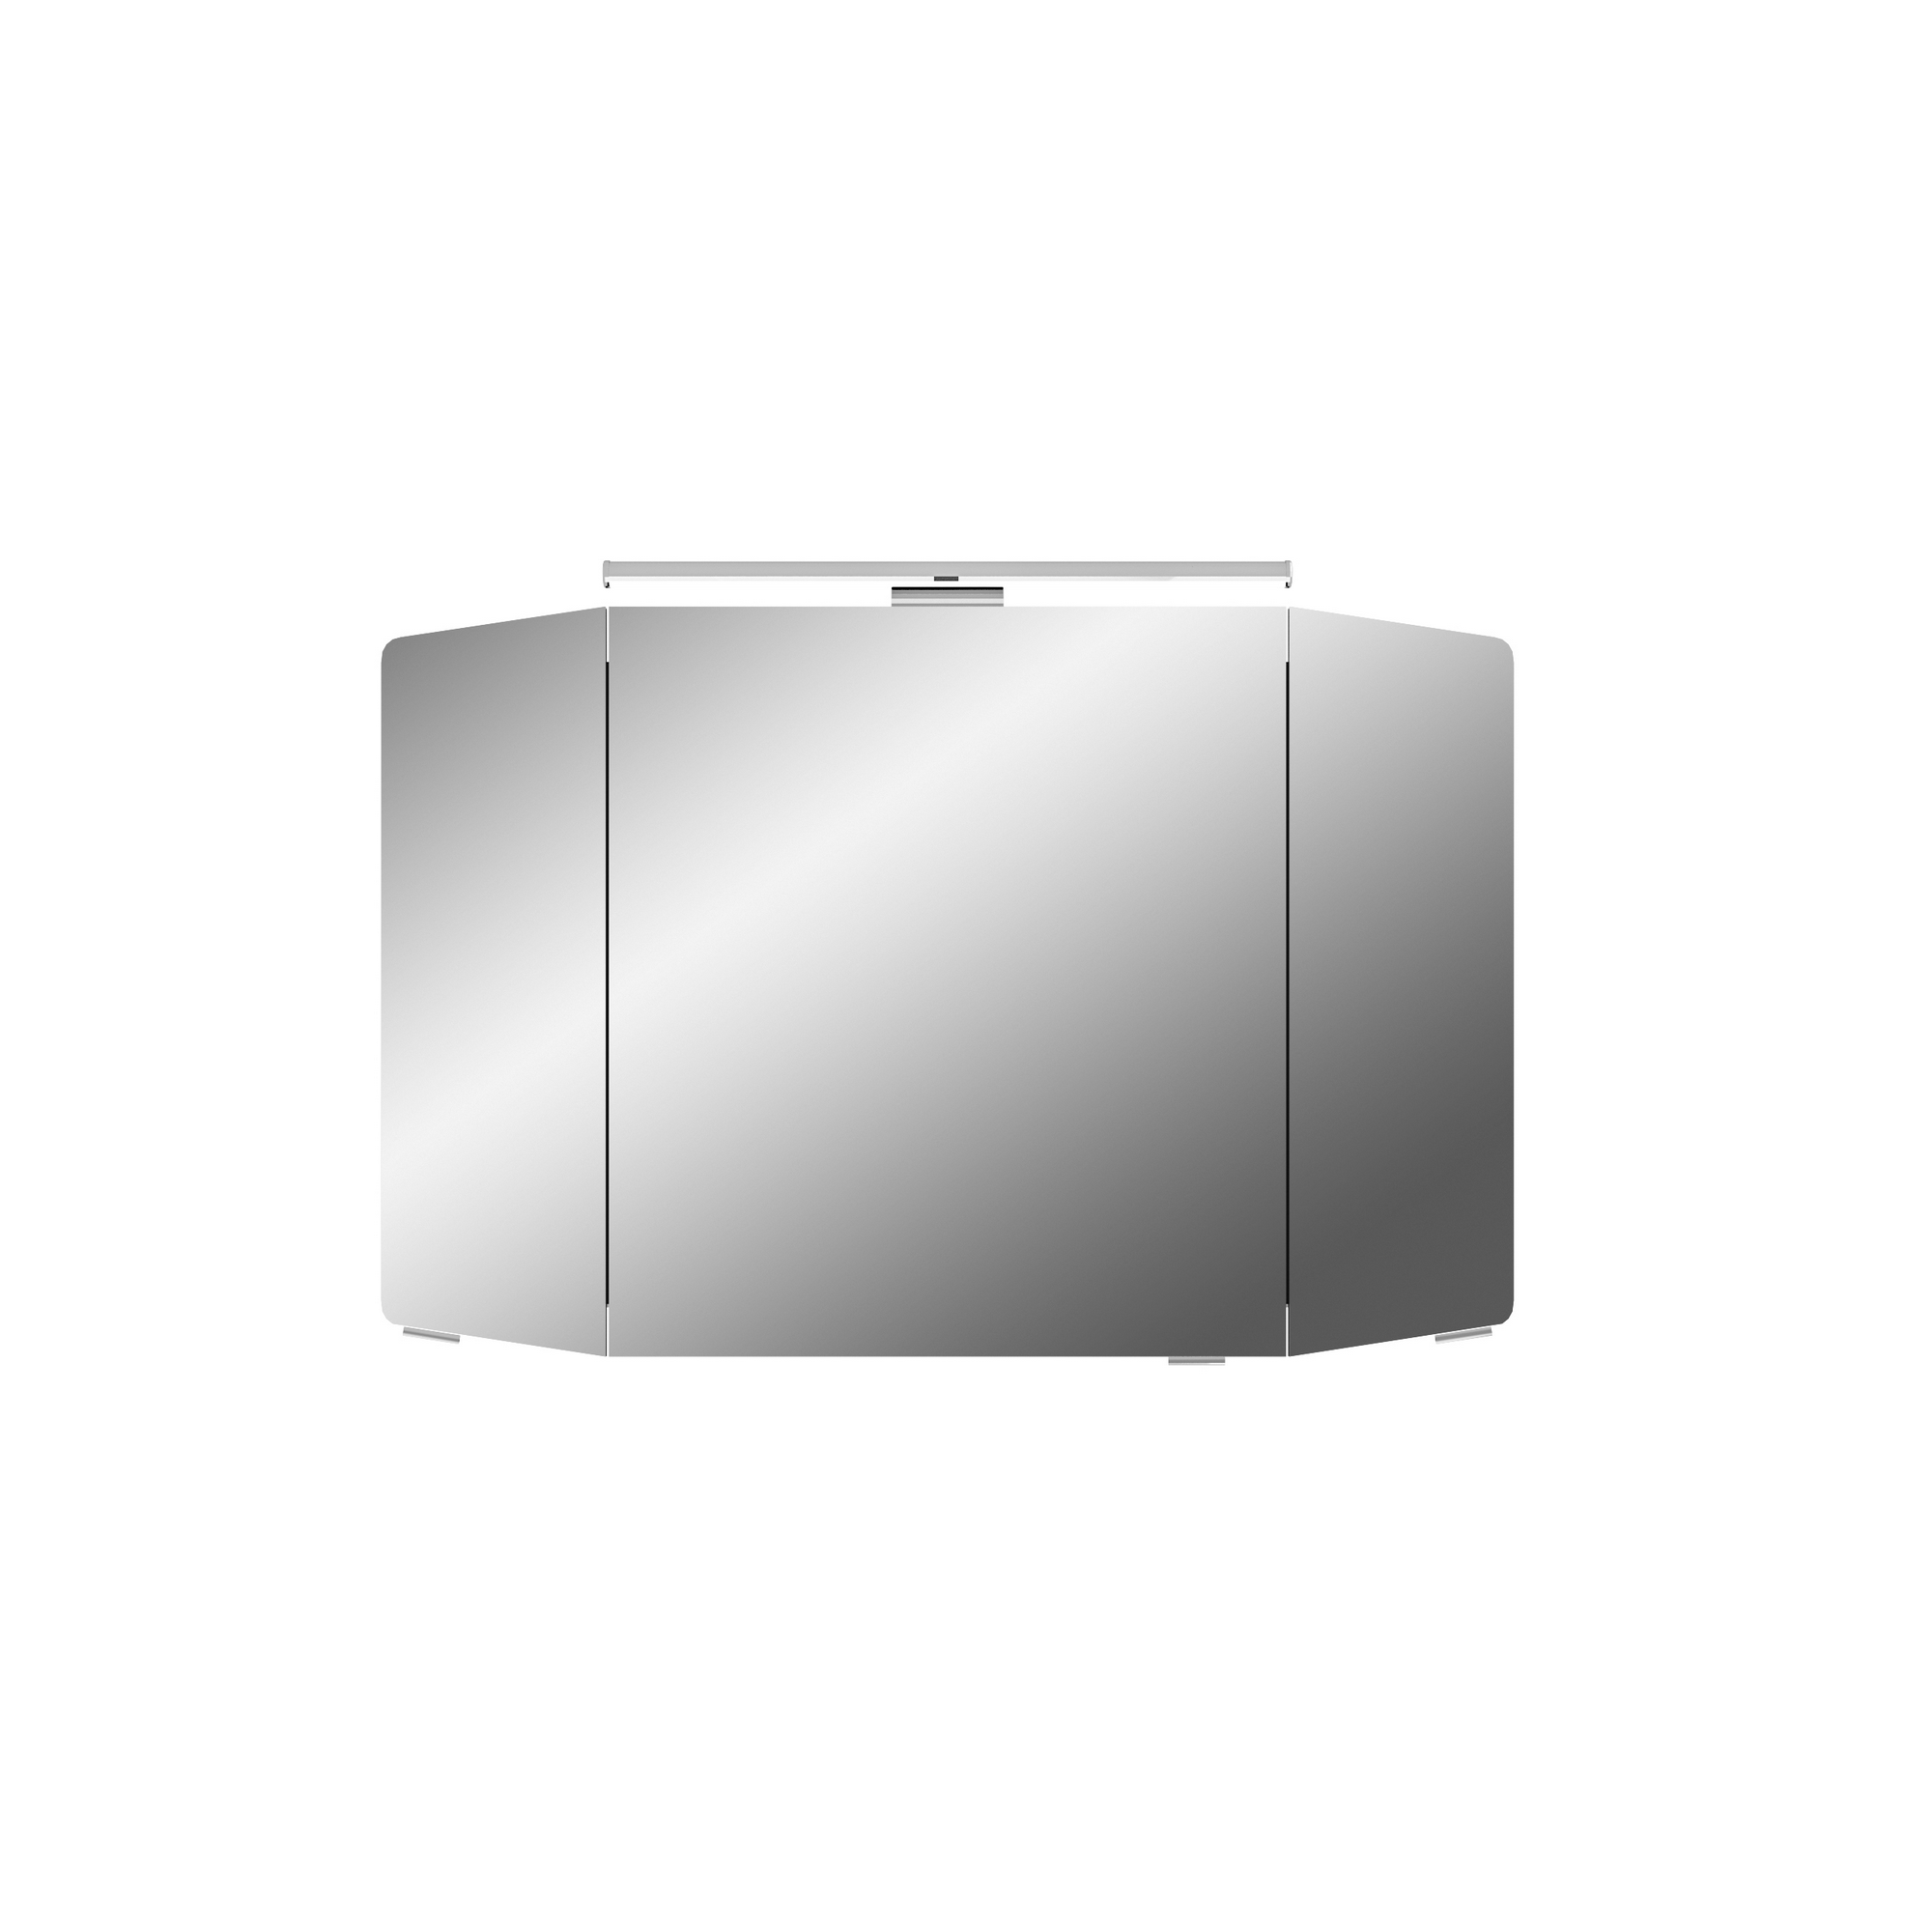 Spiegelschrank 'Taiga' anthrazit Seidenglanz 100 cm mit LED-Aufsatzleuchte + product picture